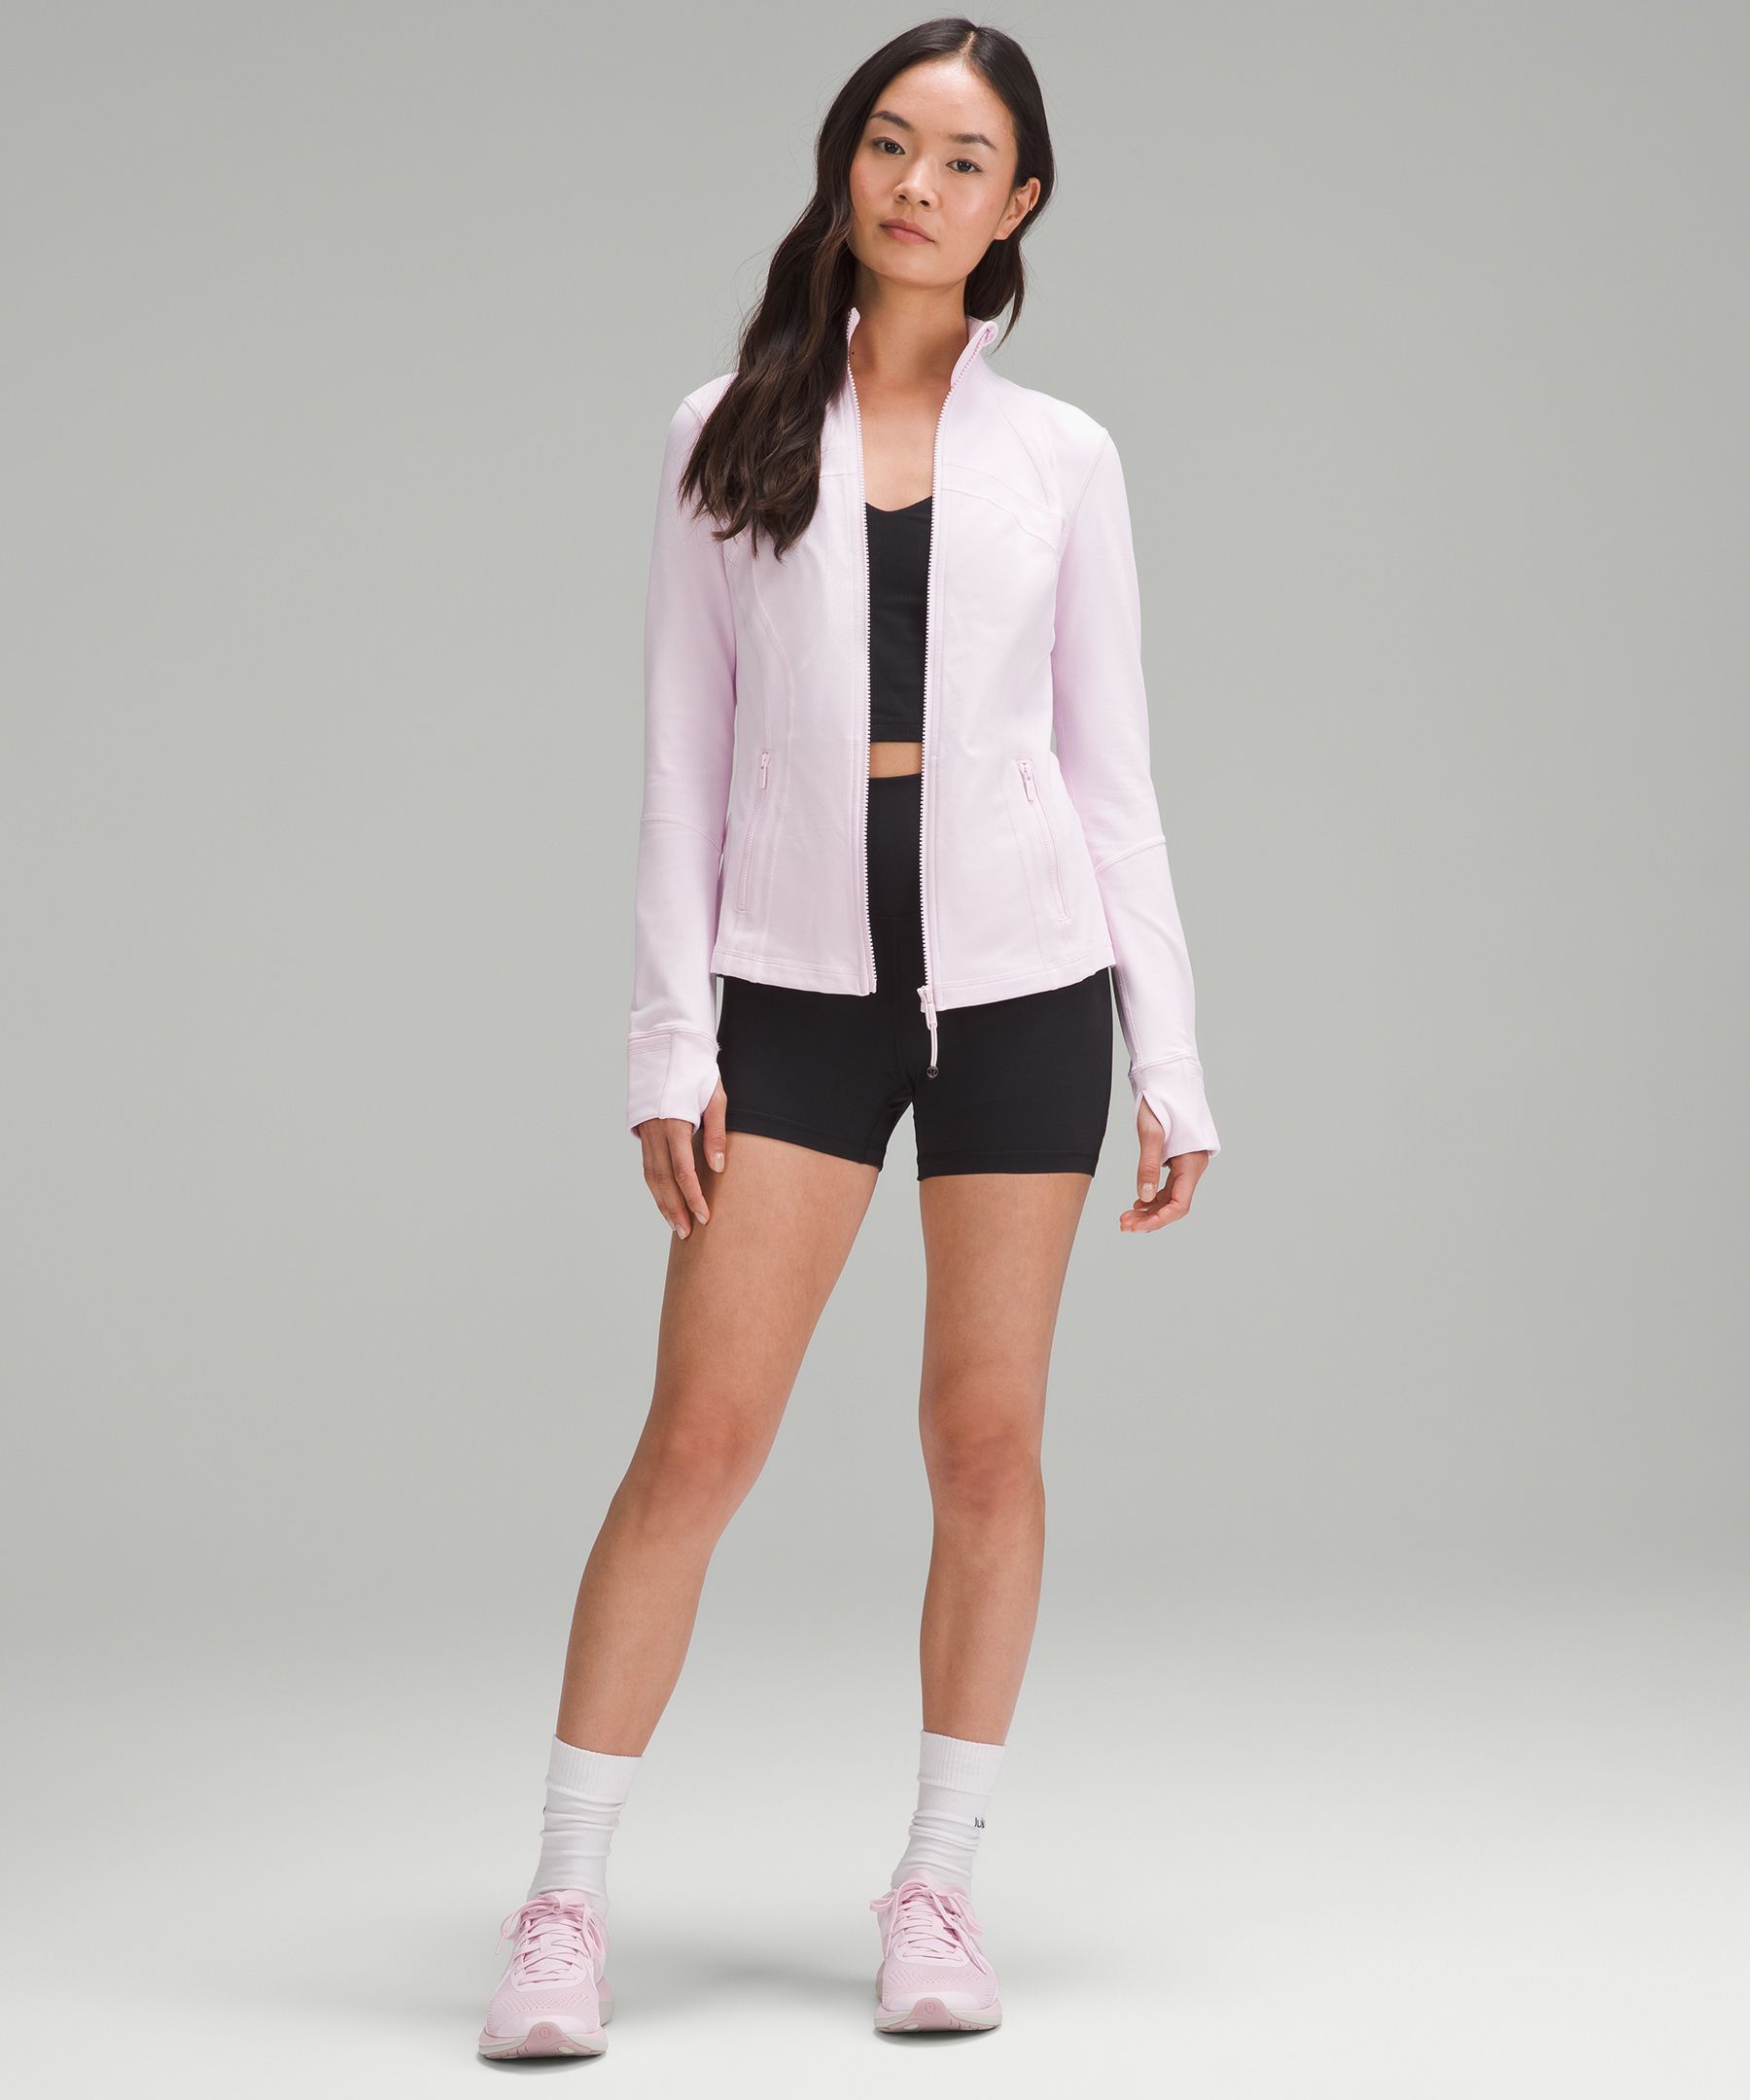 lululemon athletica, Jackets & Coats, Lululemon Define Jacket Luon Flush  Pink